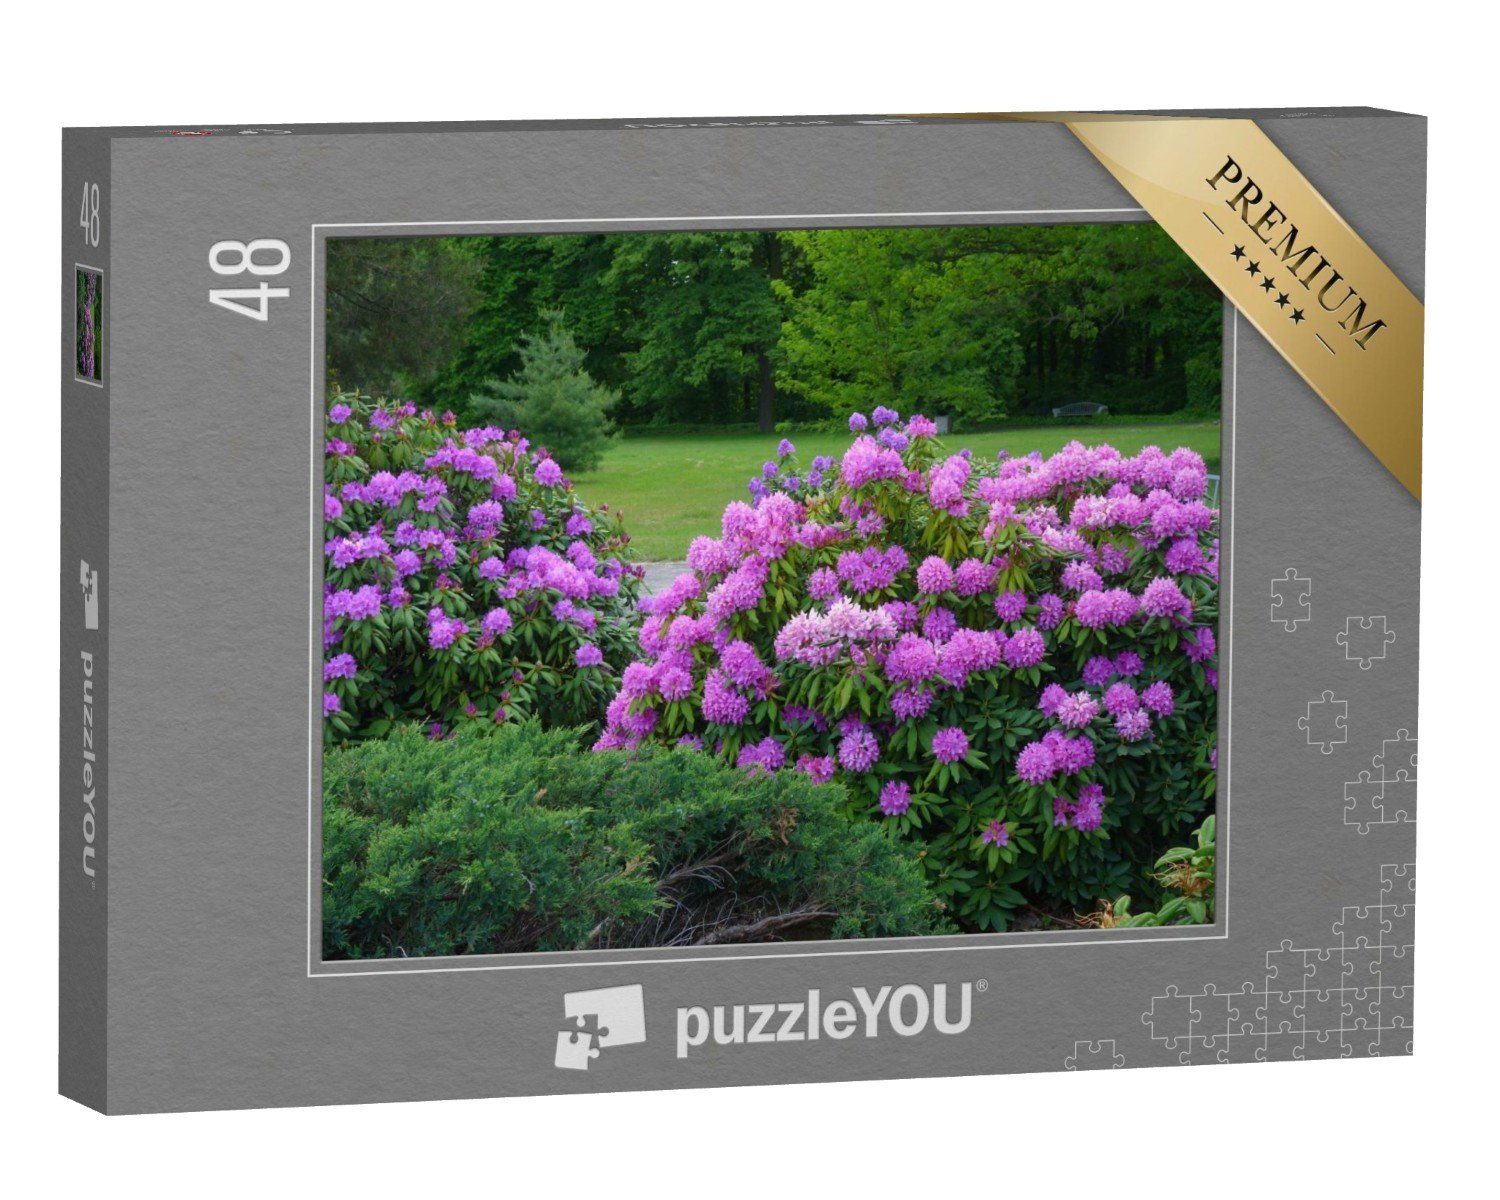 puzzleYOU Puzzle Rhododendron, schön blühende Azalee, 48 Puzzleteile, puzzleYOU-Kollektionen Pflanzen, Blumen & Pflanzen